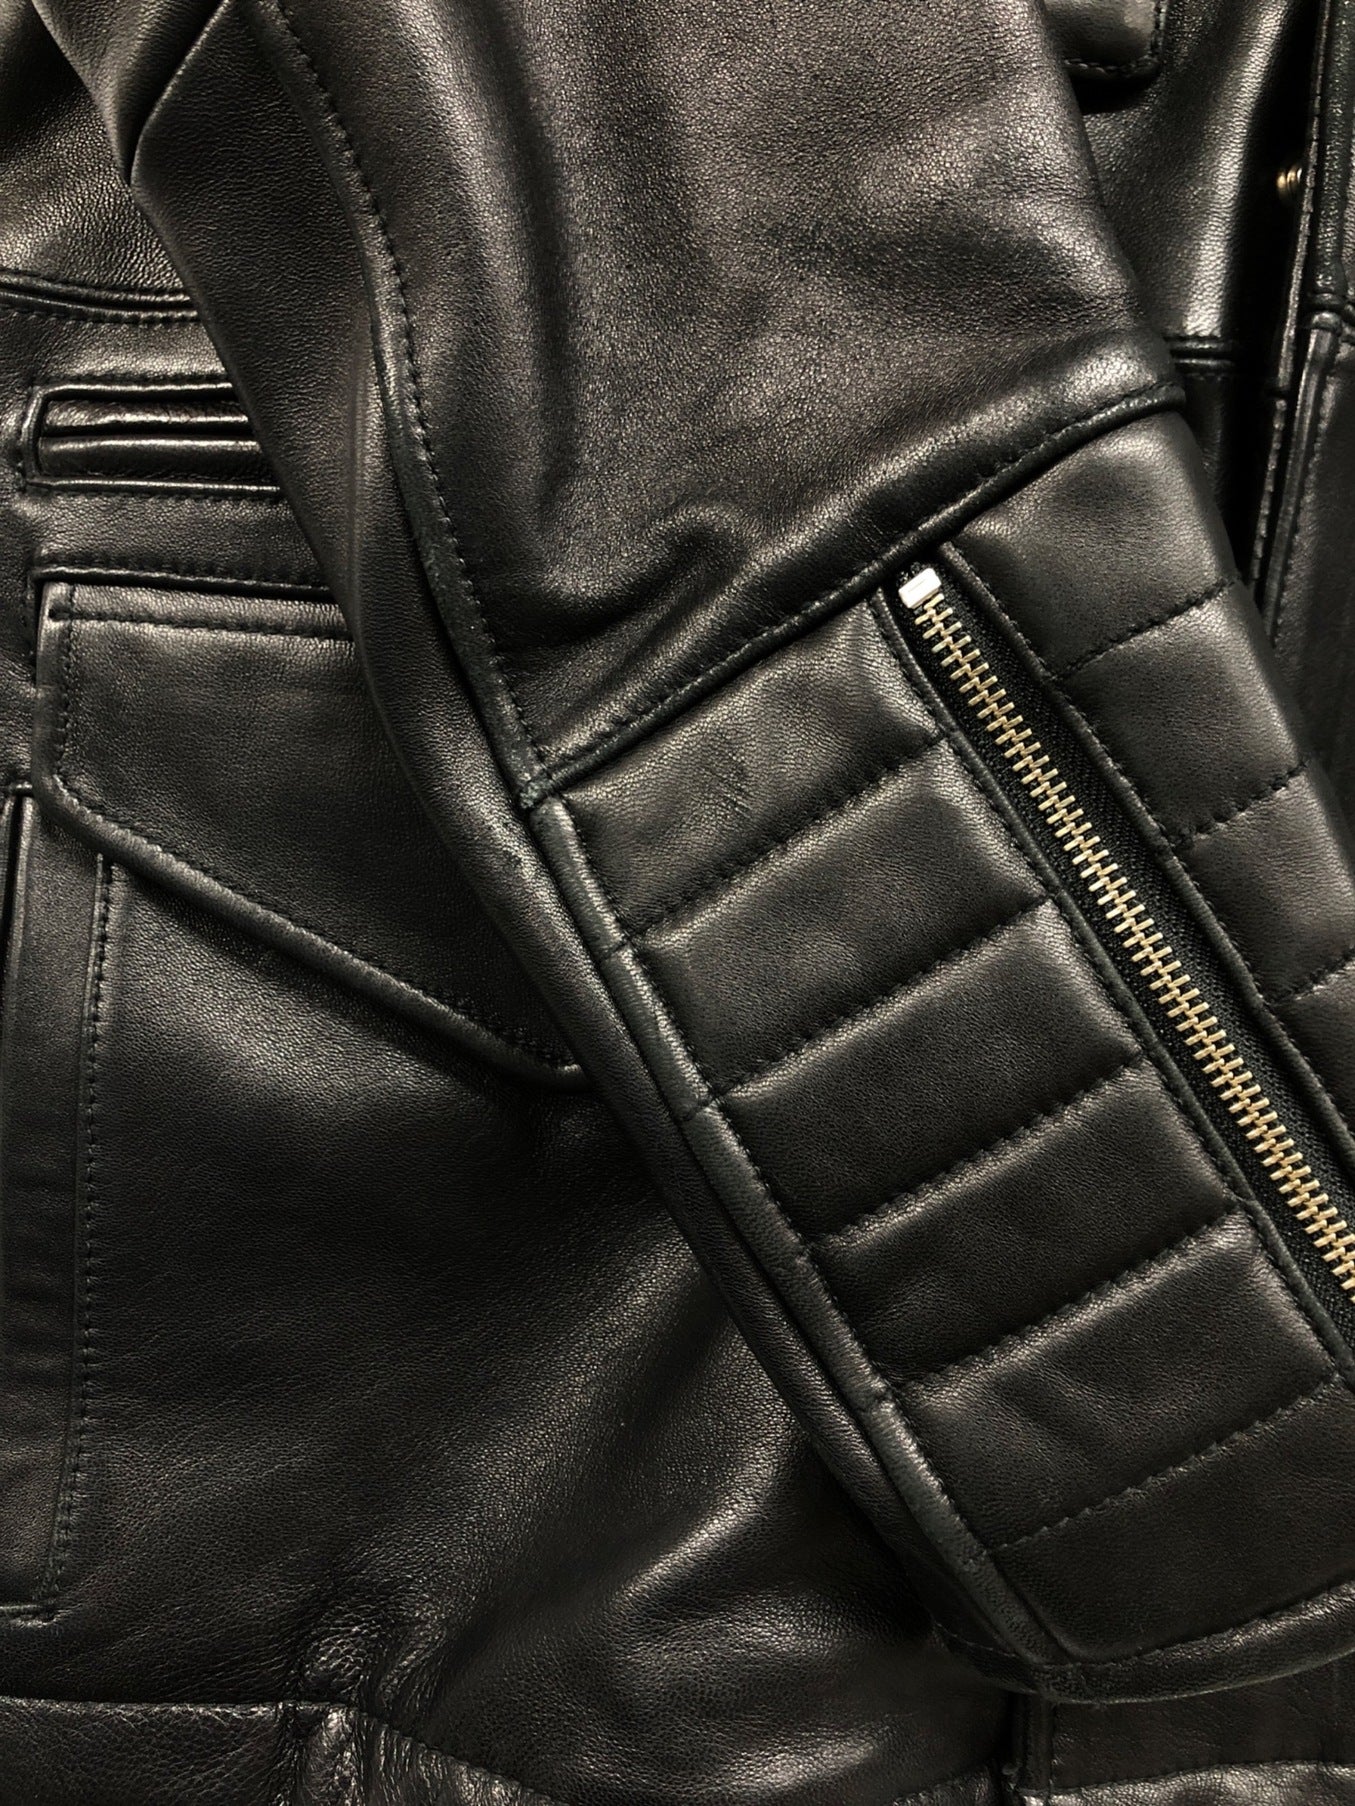 NEIGHBORHOOD M-65 Sheep Leather Jacket